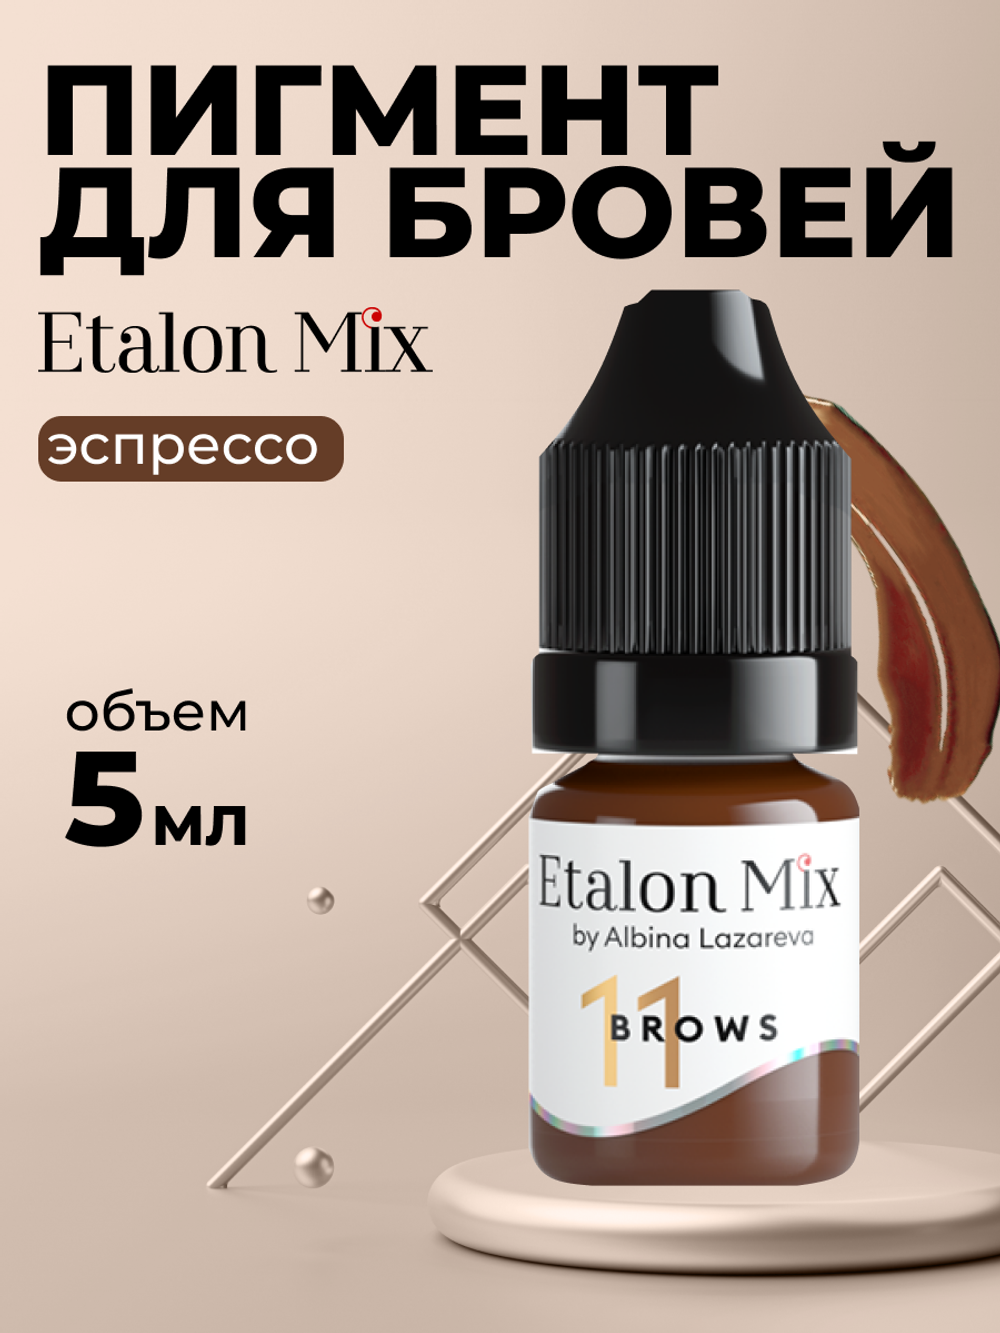 Пигмент минеральный Etalon Mix № 11 Эспрессо by Альбина Лазарева ( Бывший №6 )